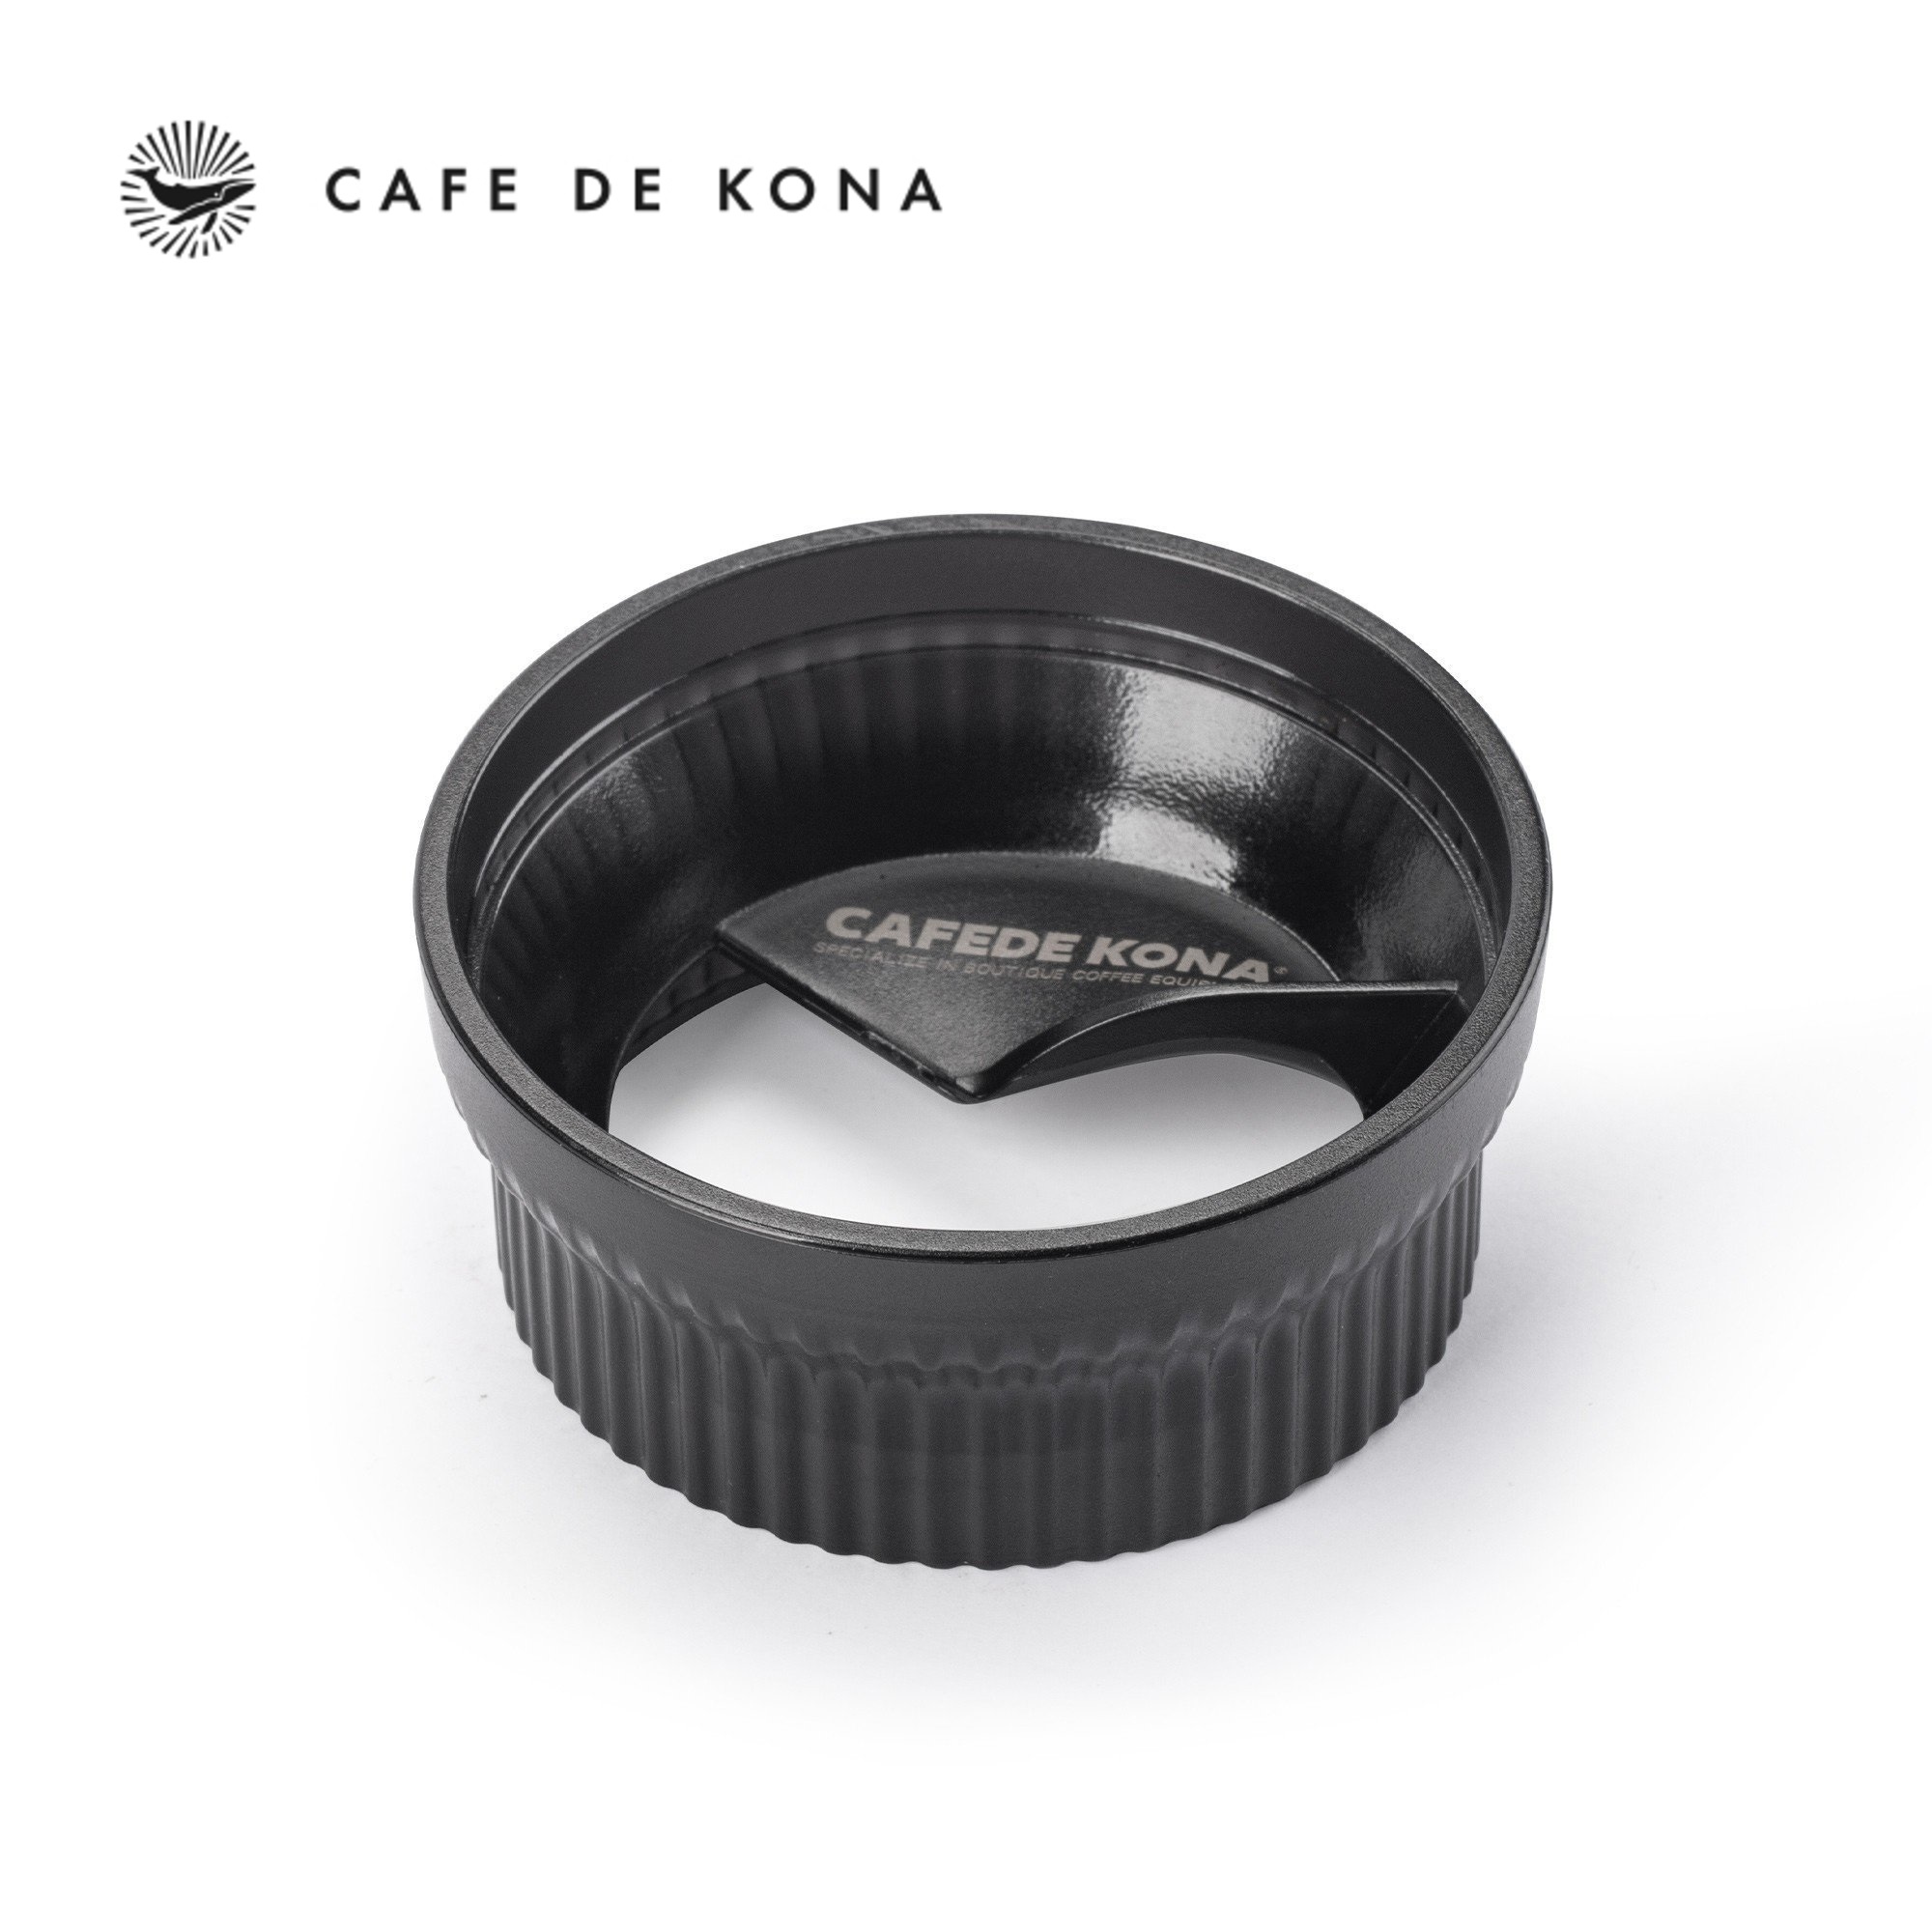 OCD san phẳng cà phê cho bình moka CAFE DE KONA